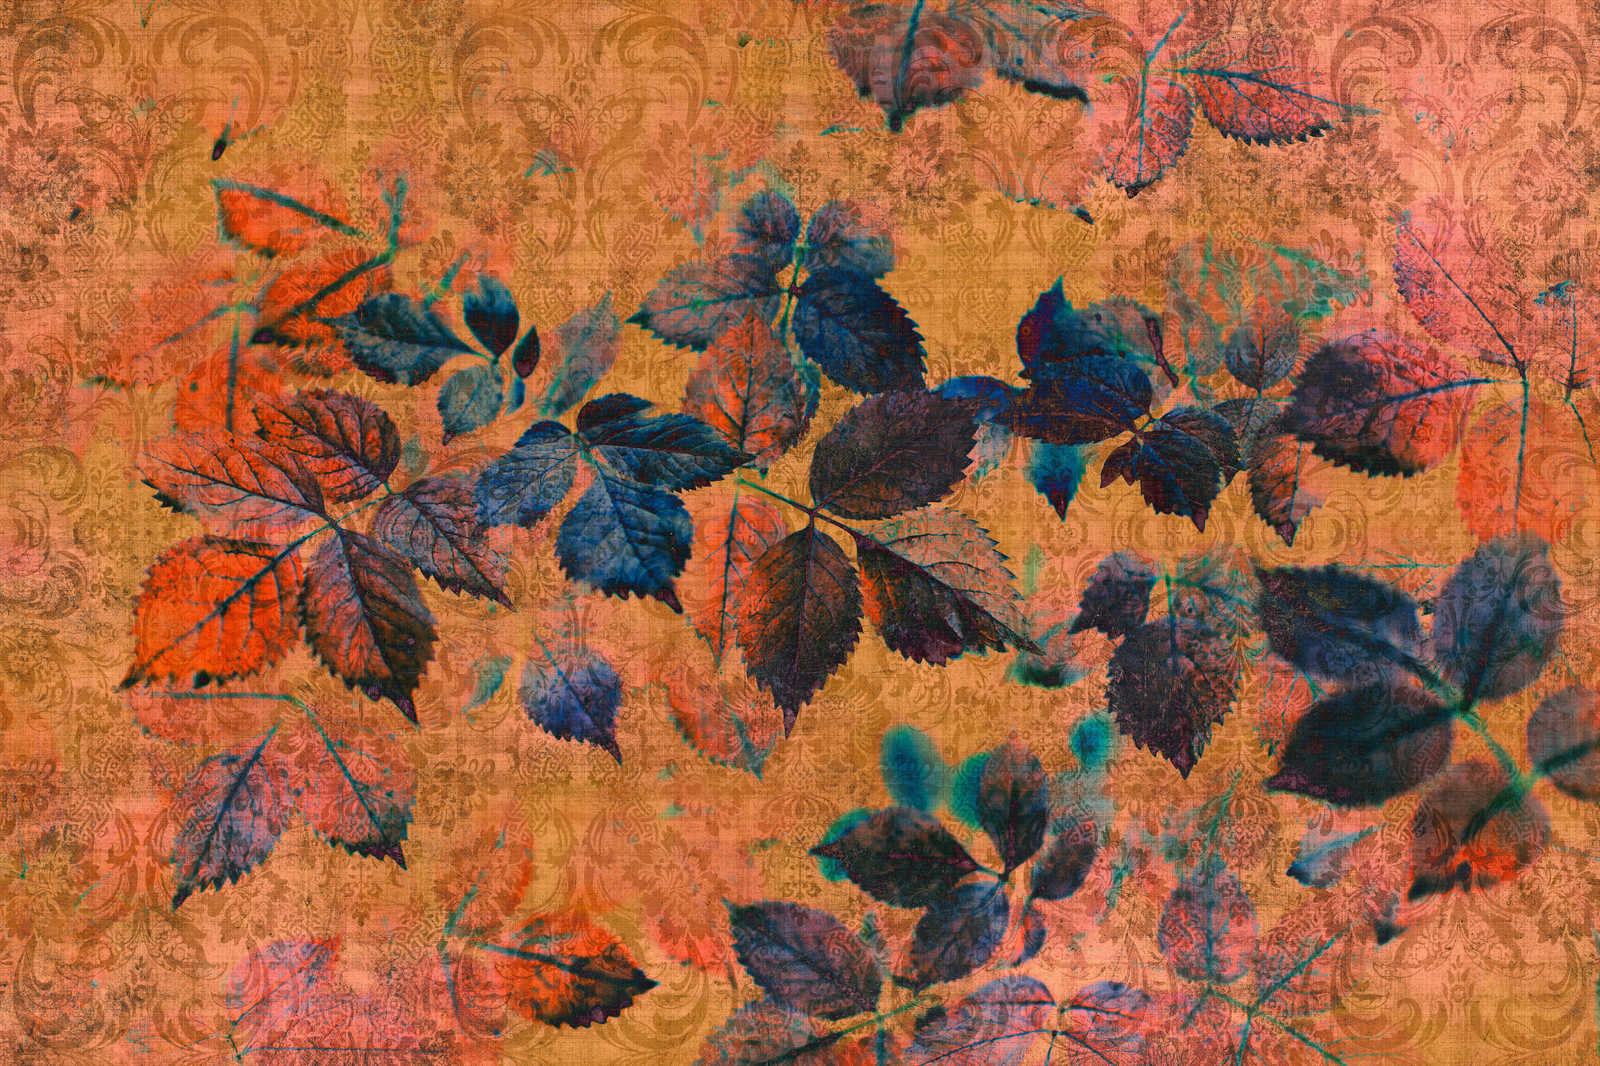             Nazomer 2 - Bloemrijk canvas schilderij in natuurlijke linnenstructuur met warme sfeer - 0,90 m x 0,60 m
        